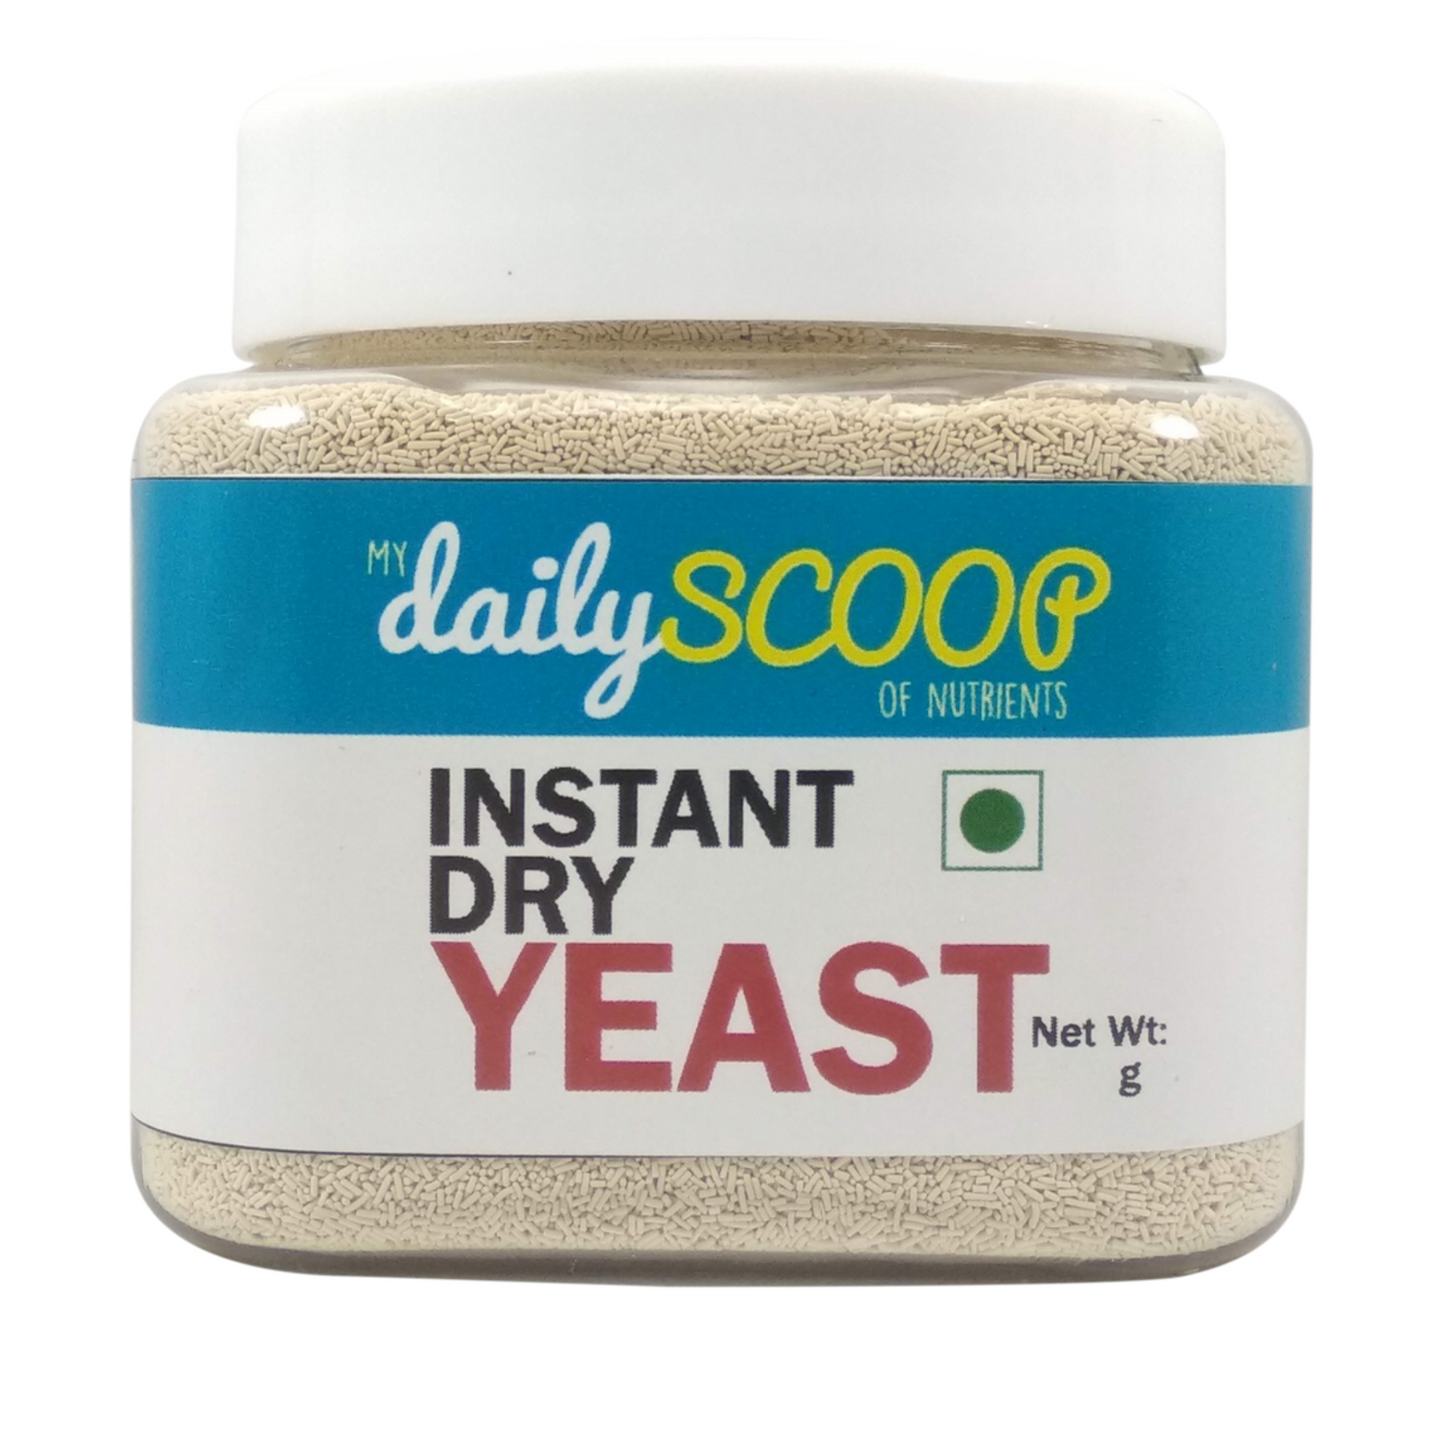 Instant Dry Yeast